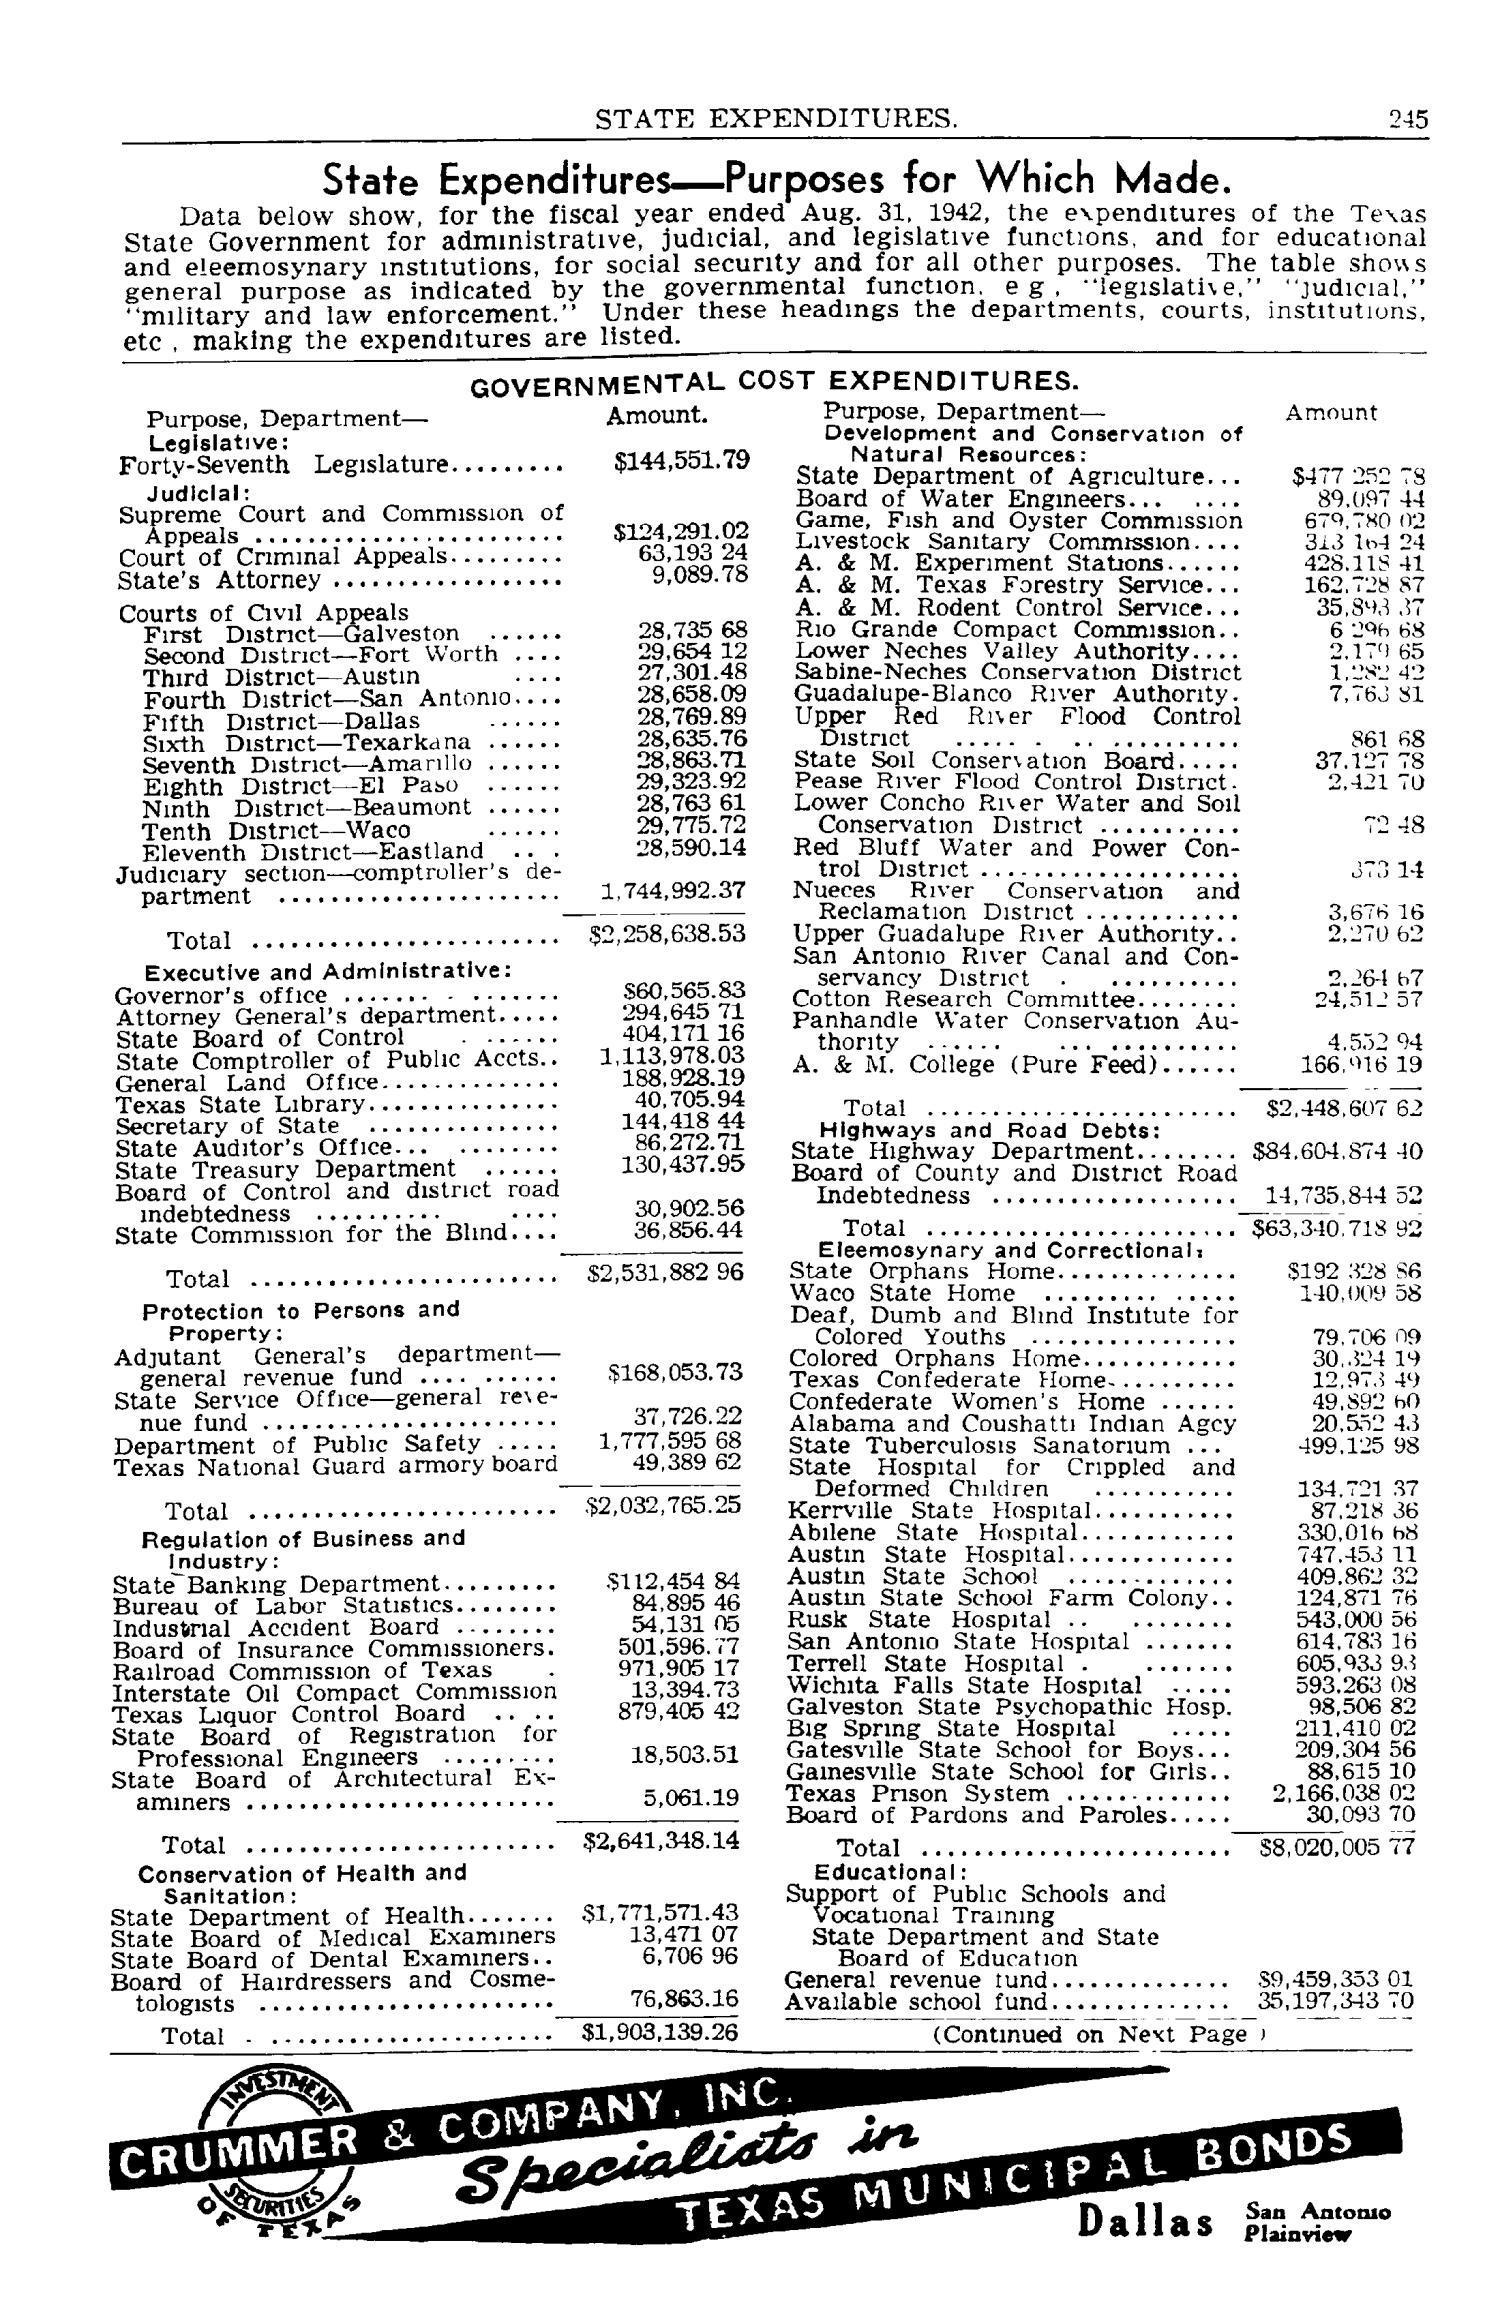 Texas Almanac, 1943-1944
                                                
                                                    245
                                                